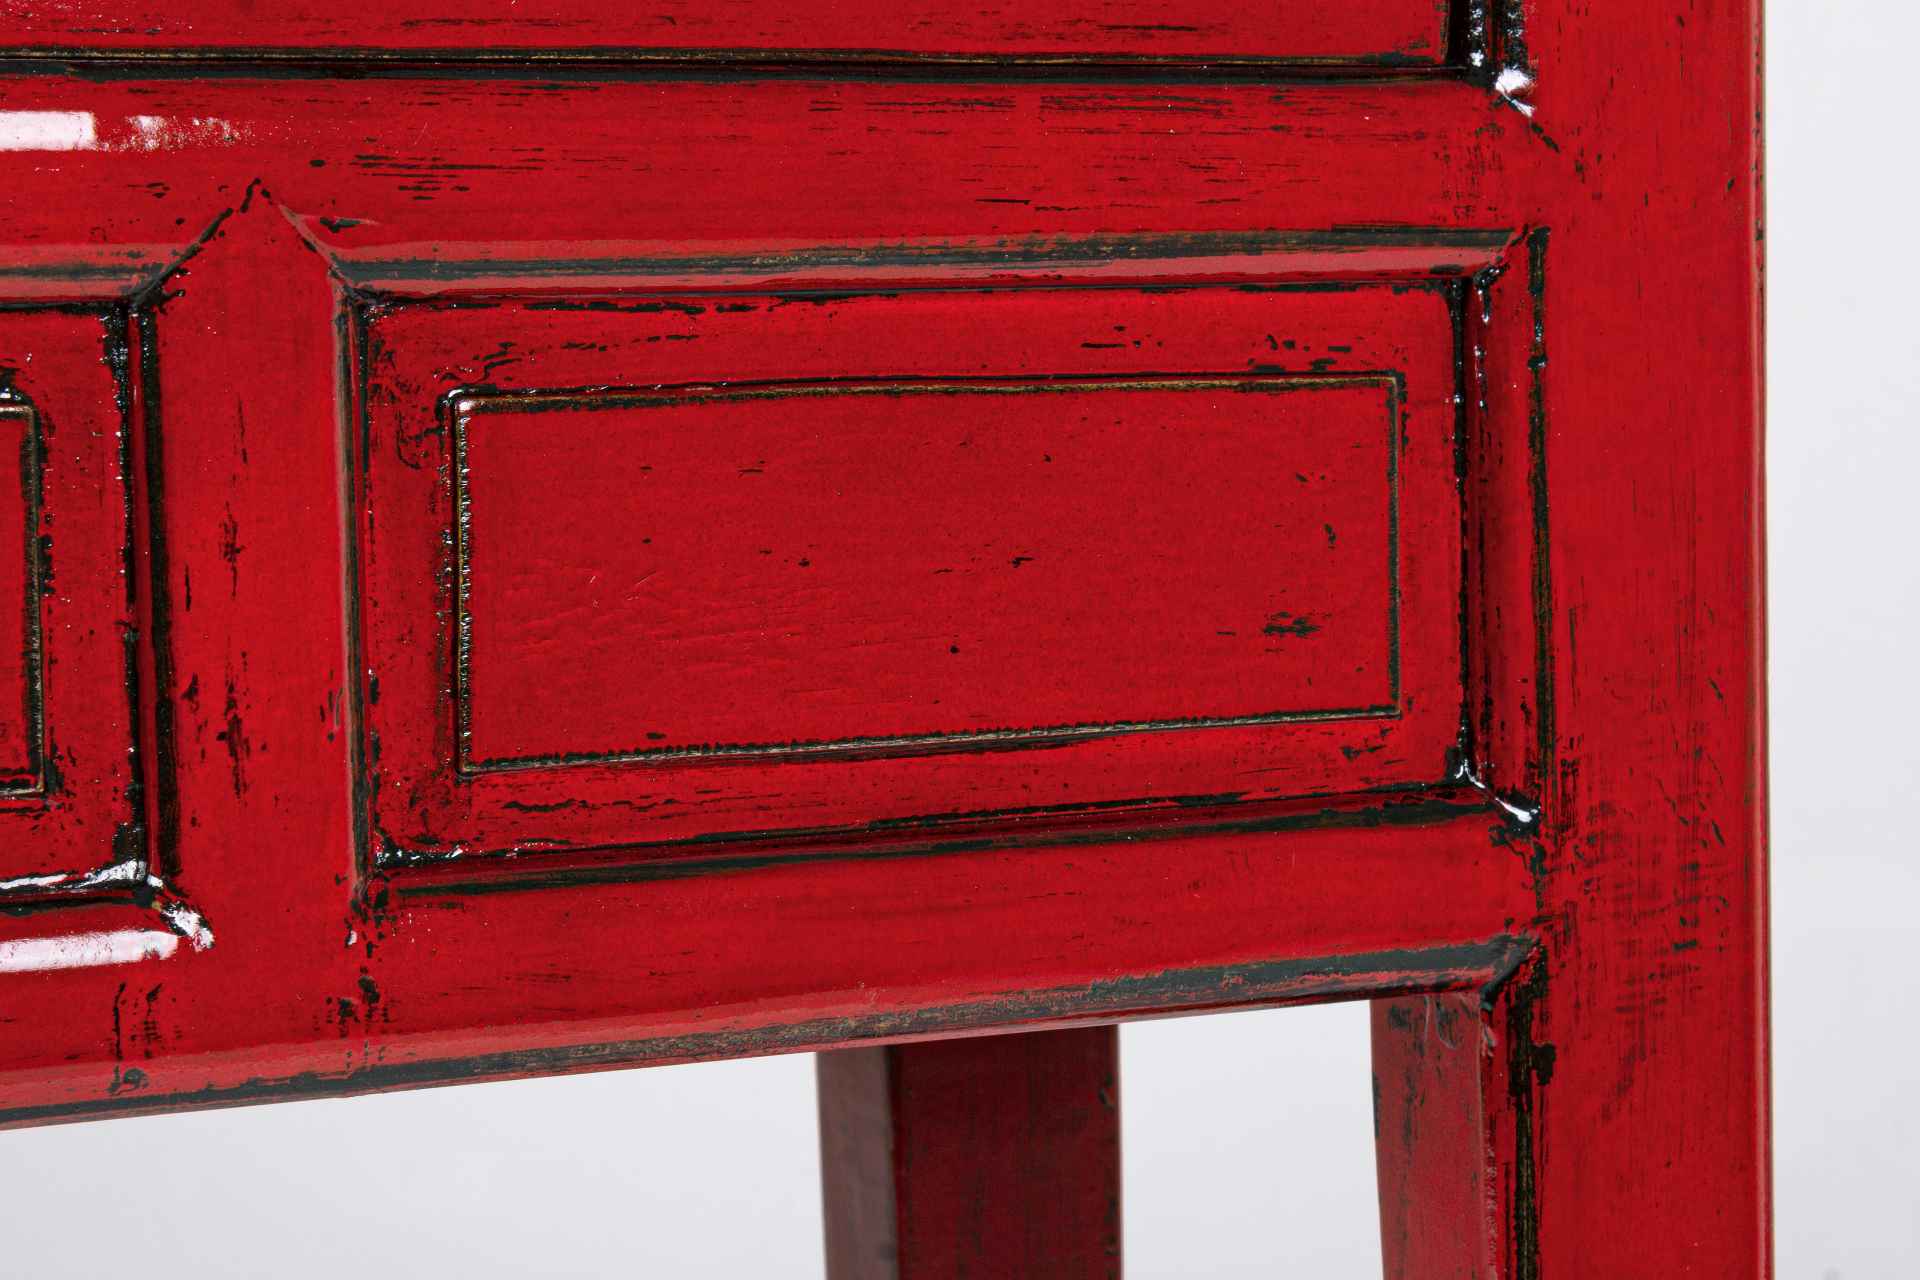 Die Konsole Jinan überzeugt mit ihrem klassischen Design. Gefertigt wurde sie aus Ulmenholz, welches einen roten Farbton besitzt. Das Gestell ist auch aus Ulmenholz. Die Konsole verfügt über drei Schubladen. Die Breite beträgt 128 cm.